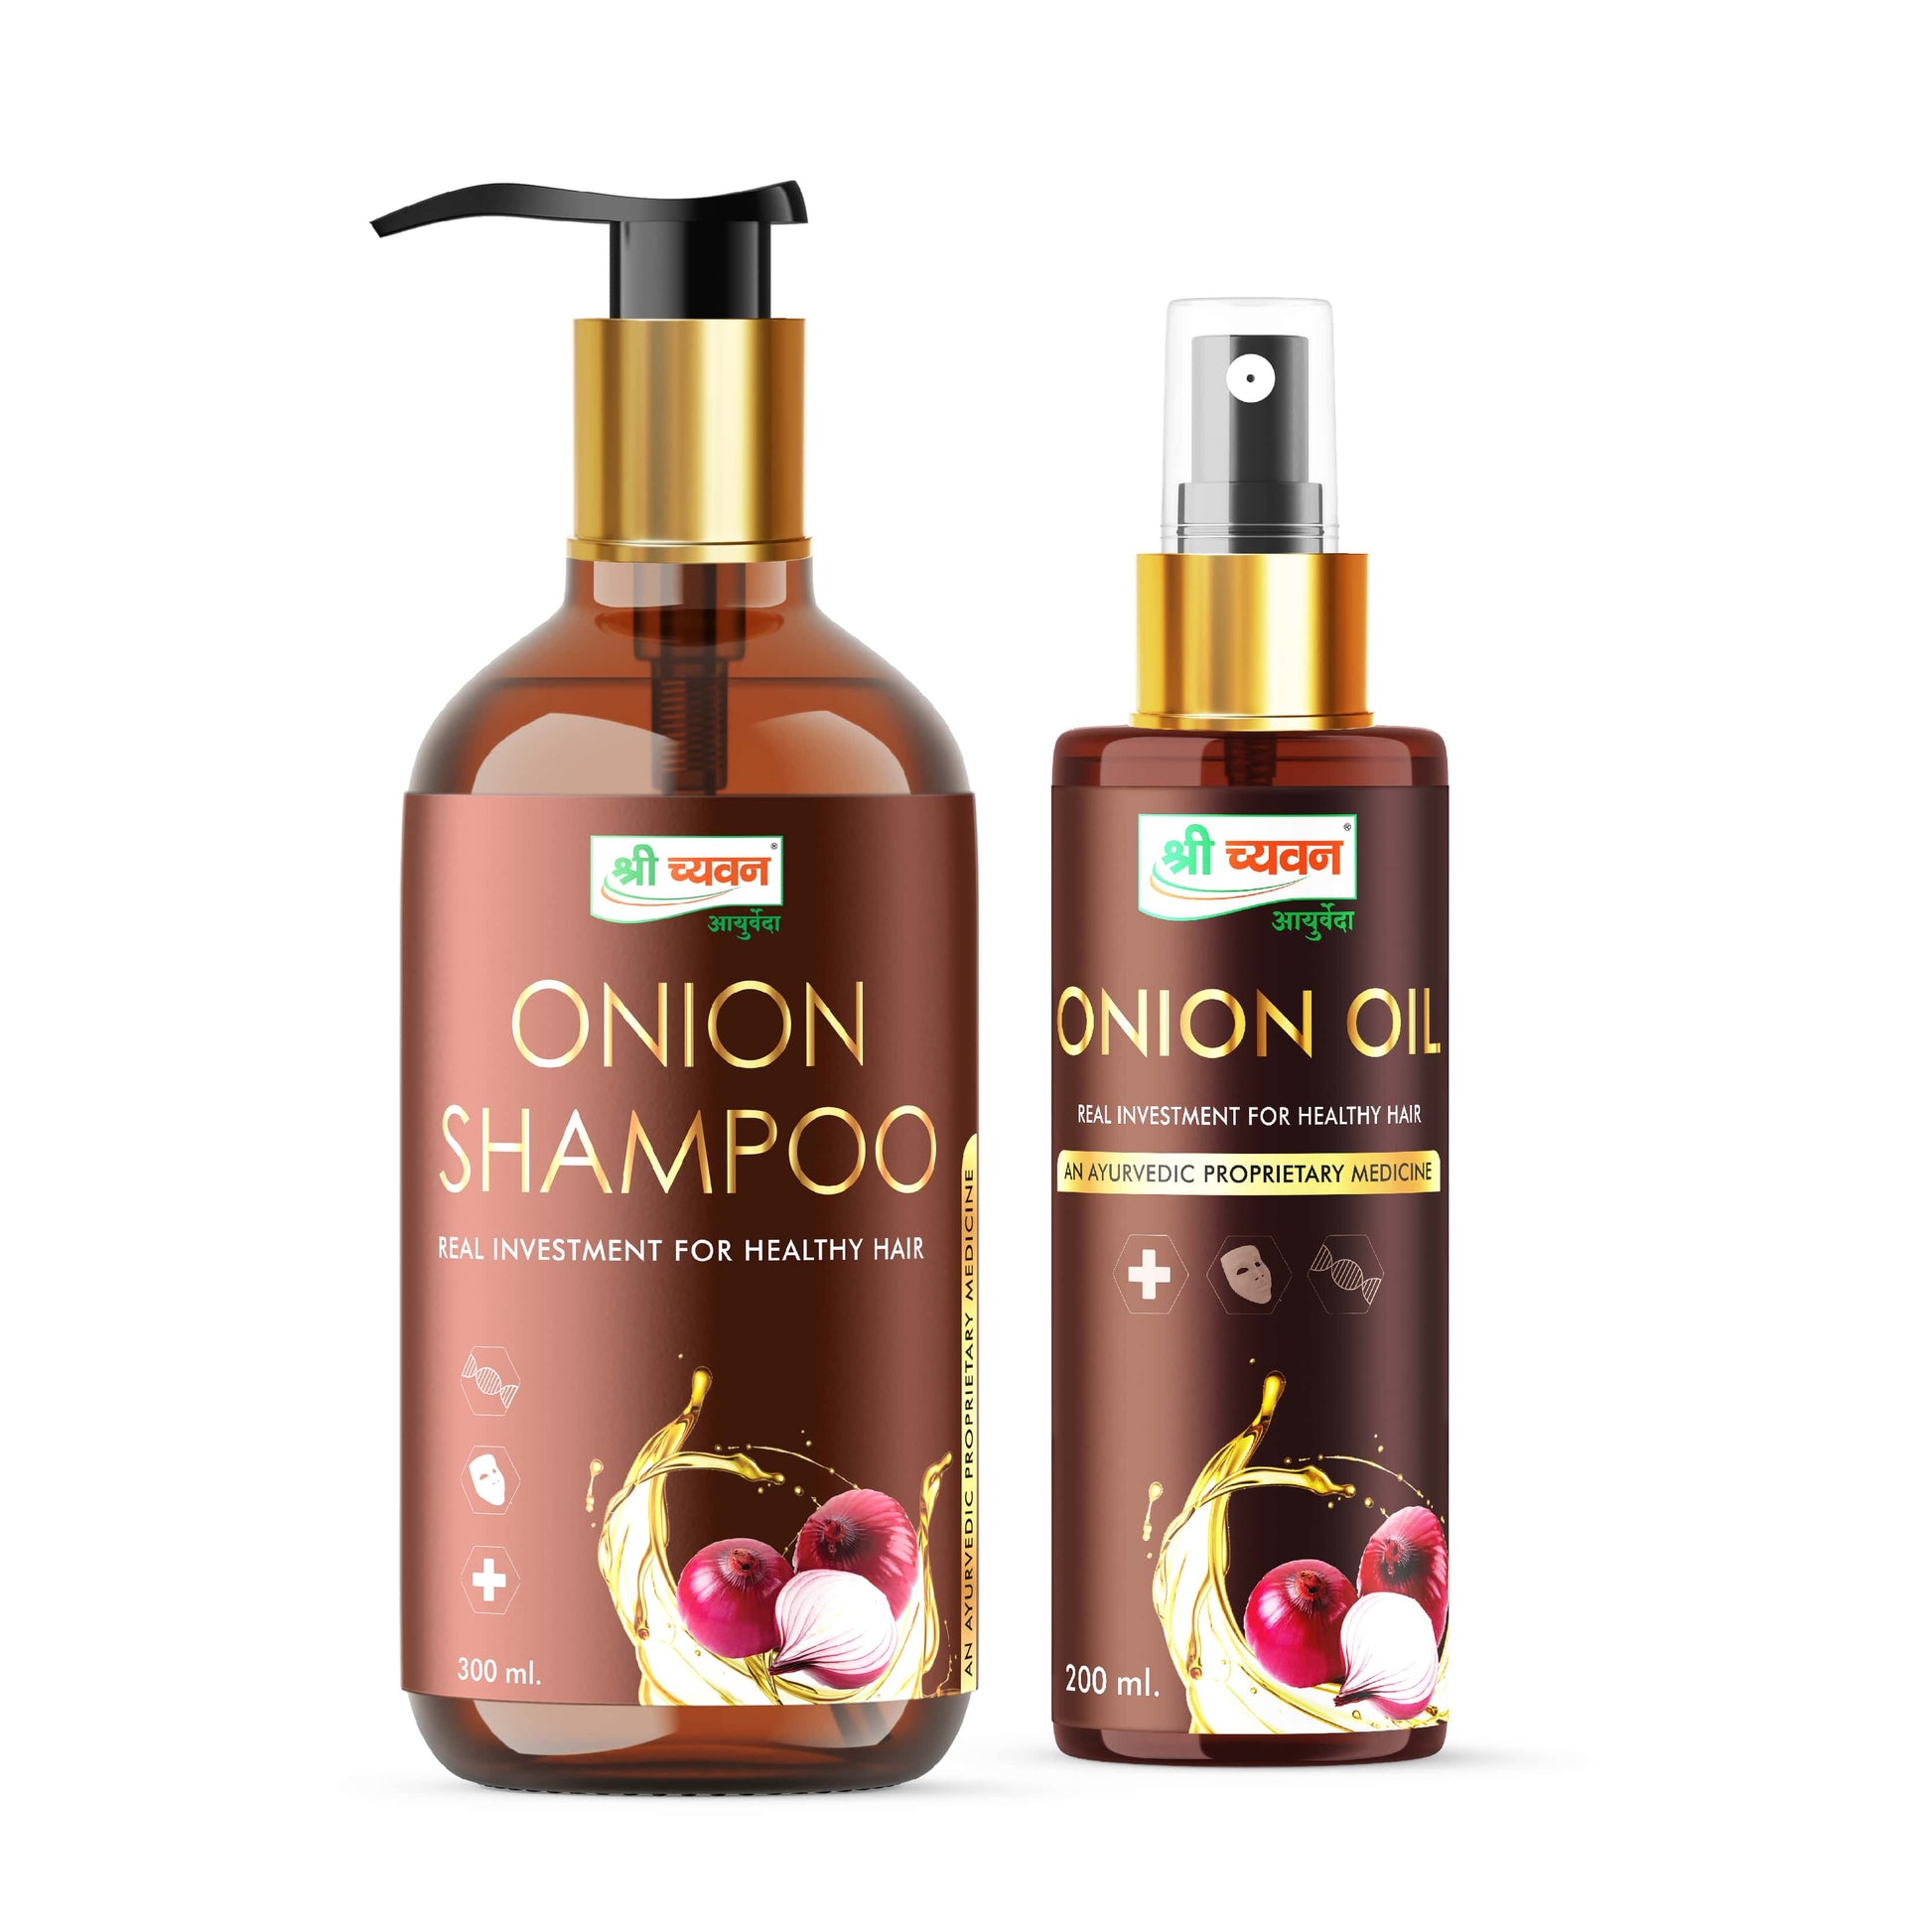 Onion Oil and Shampoo